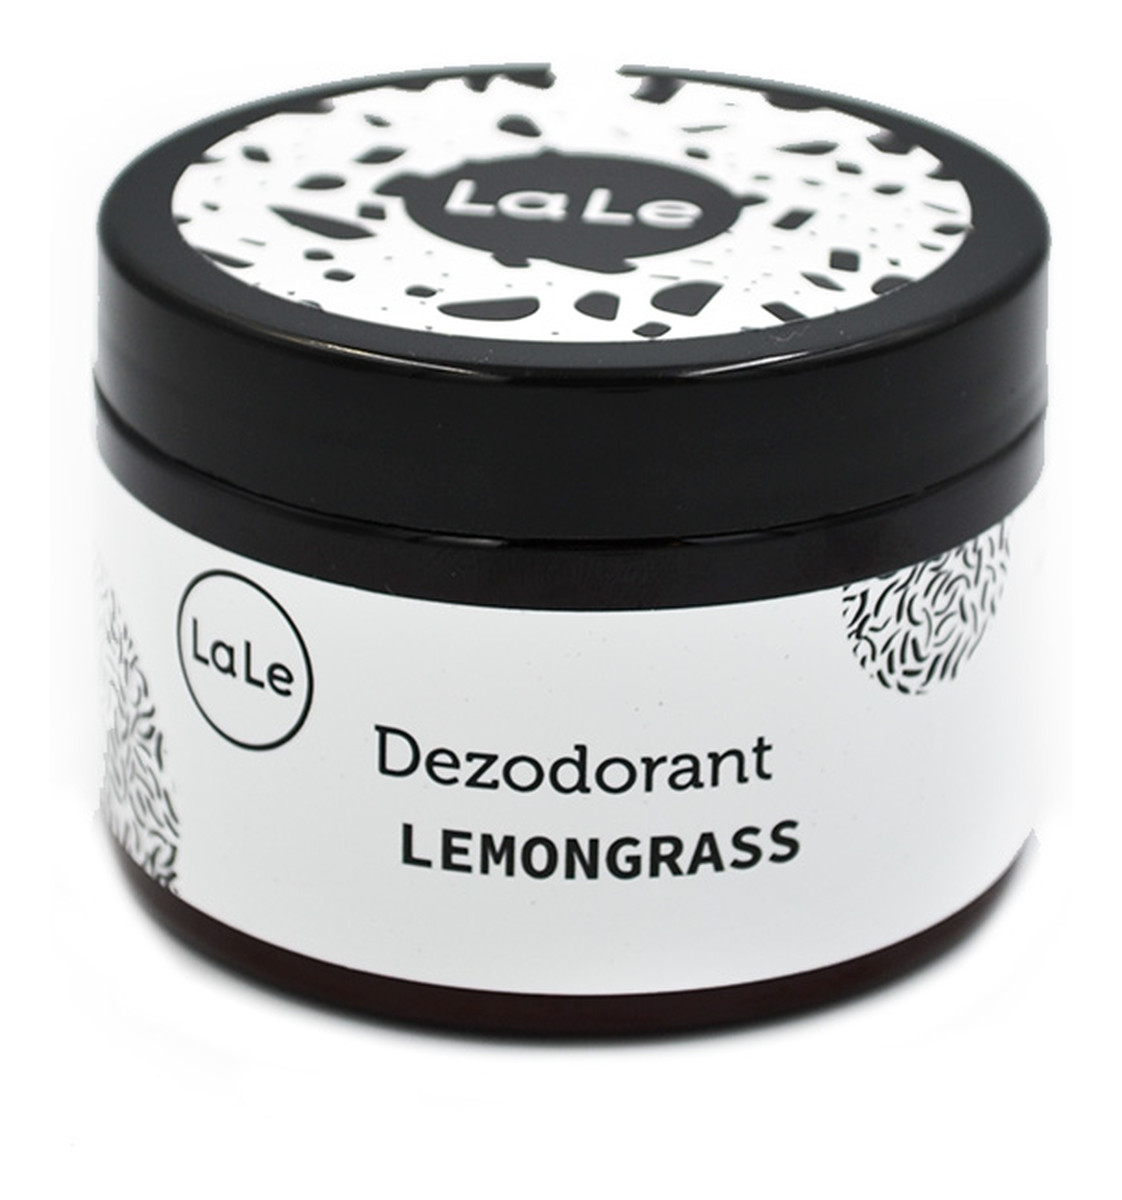 Dezodorant w Kremie z Olejkiem Lemongrass